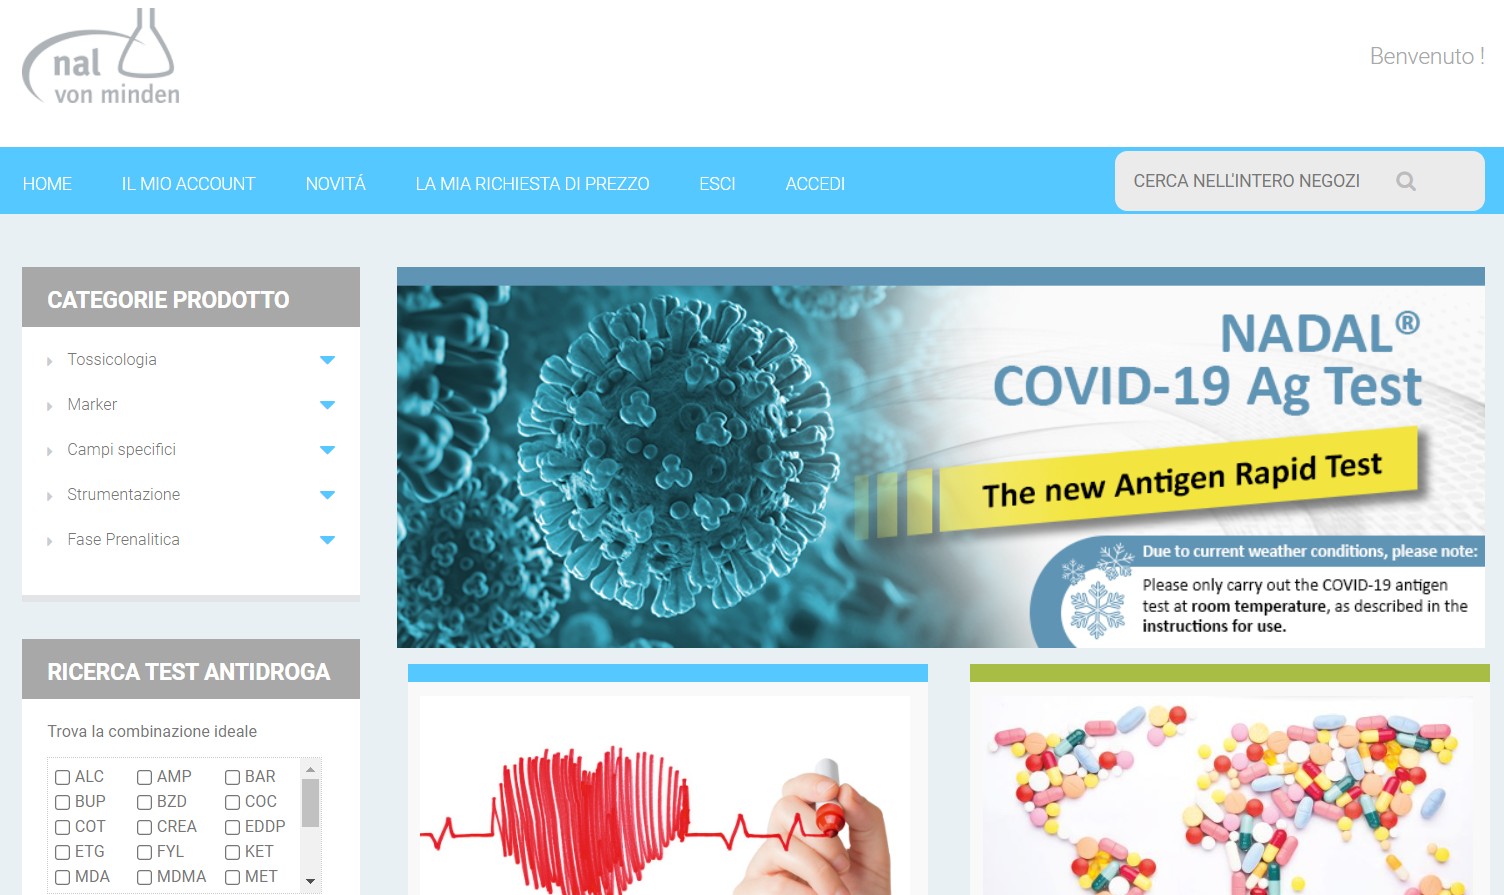 Test rapido per il coronavirus: Thomas Zander, CEO di nal von minden, risponde alle domande più frequenti